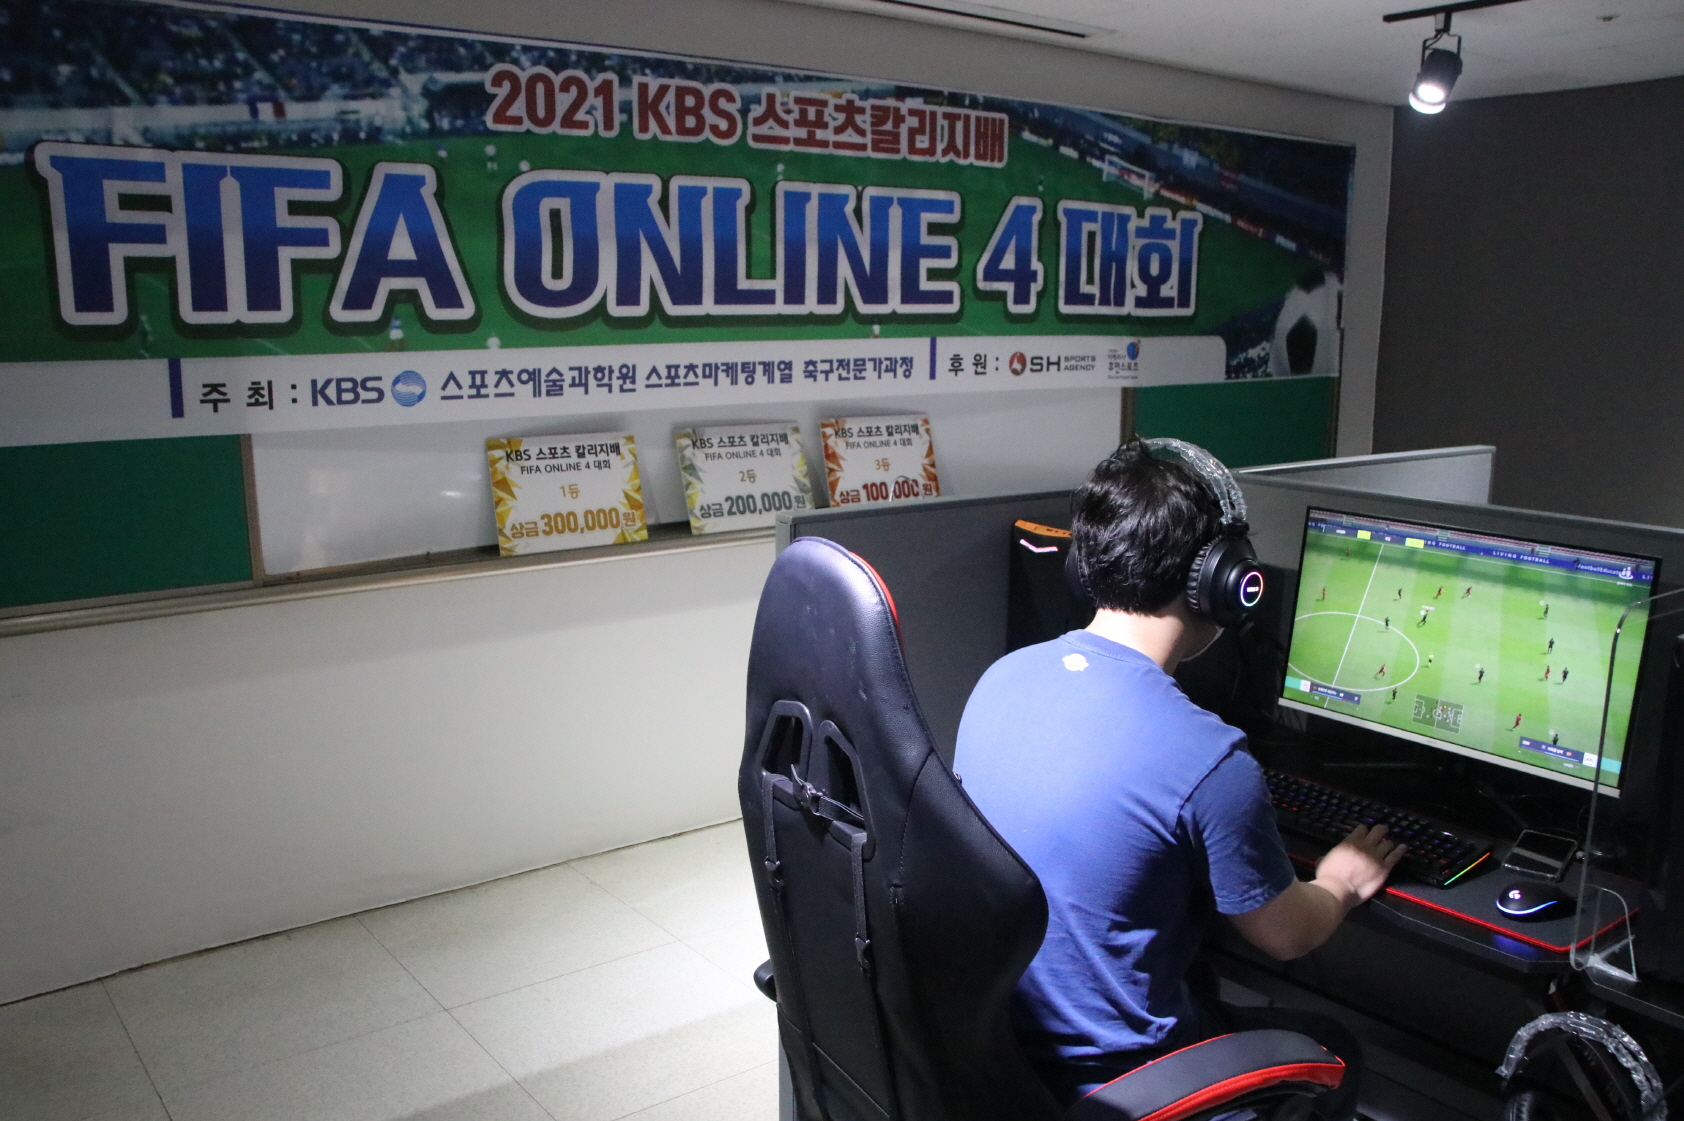 사진 : '2021 KBS스포츠칼리지배 FIFA ONLINE 4 대회' 1vs1 경기 진행 모습